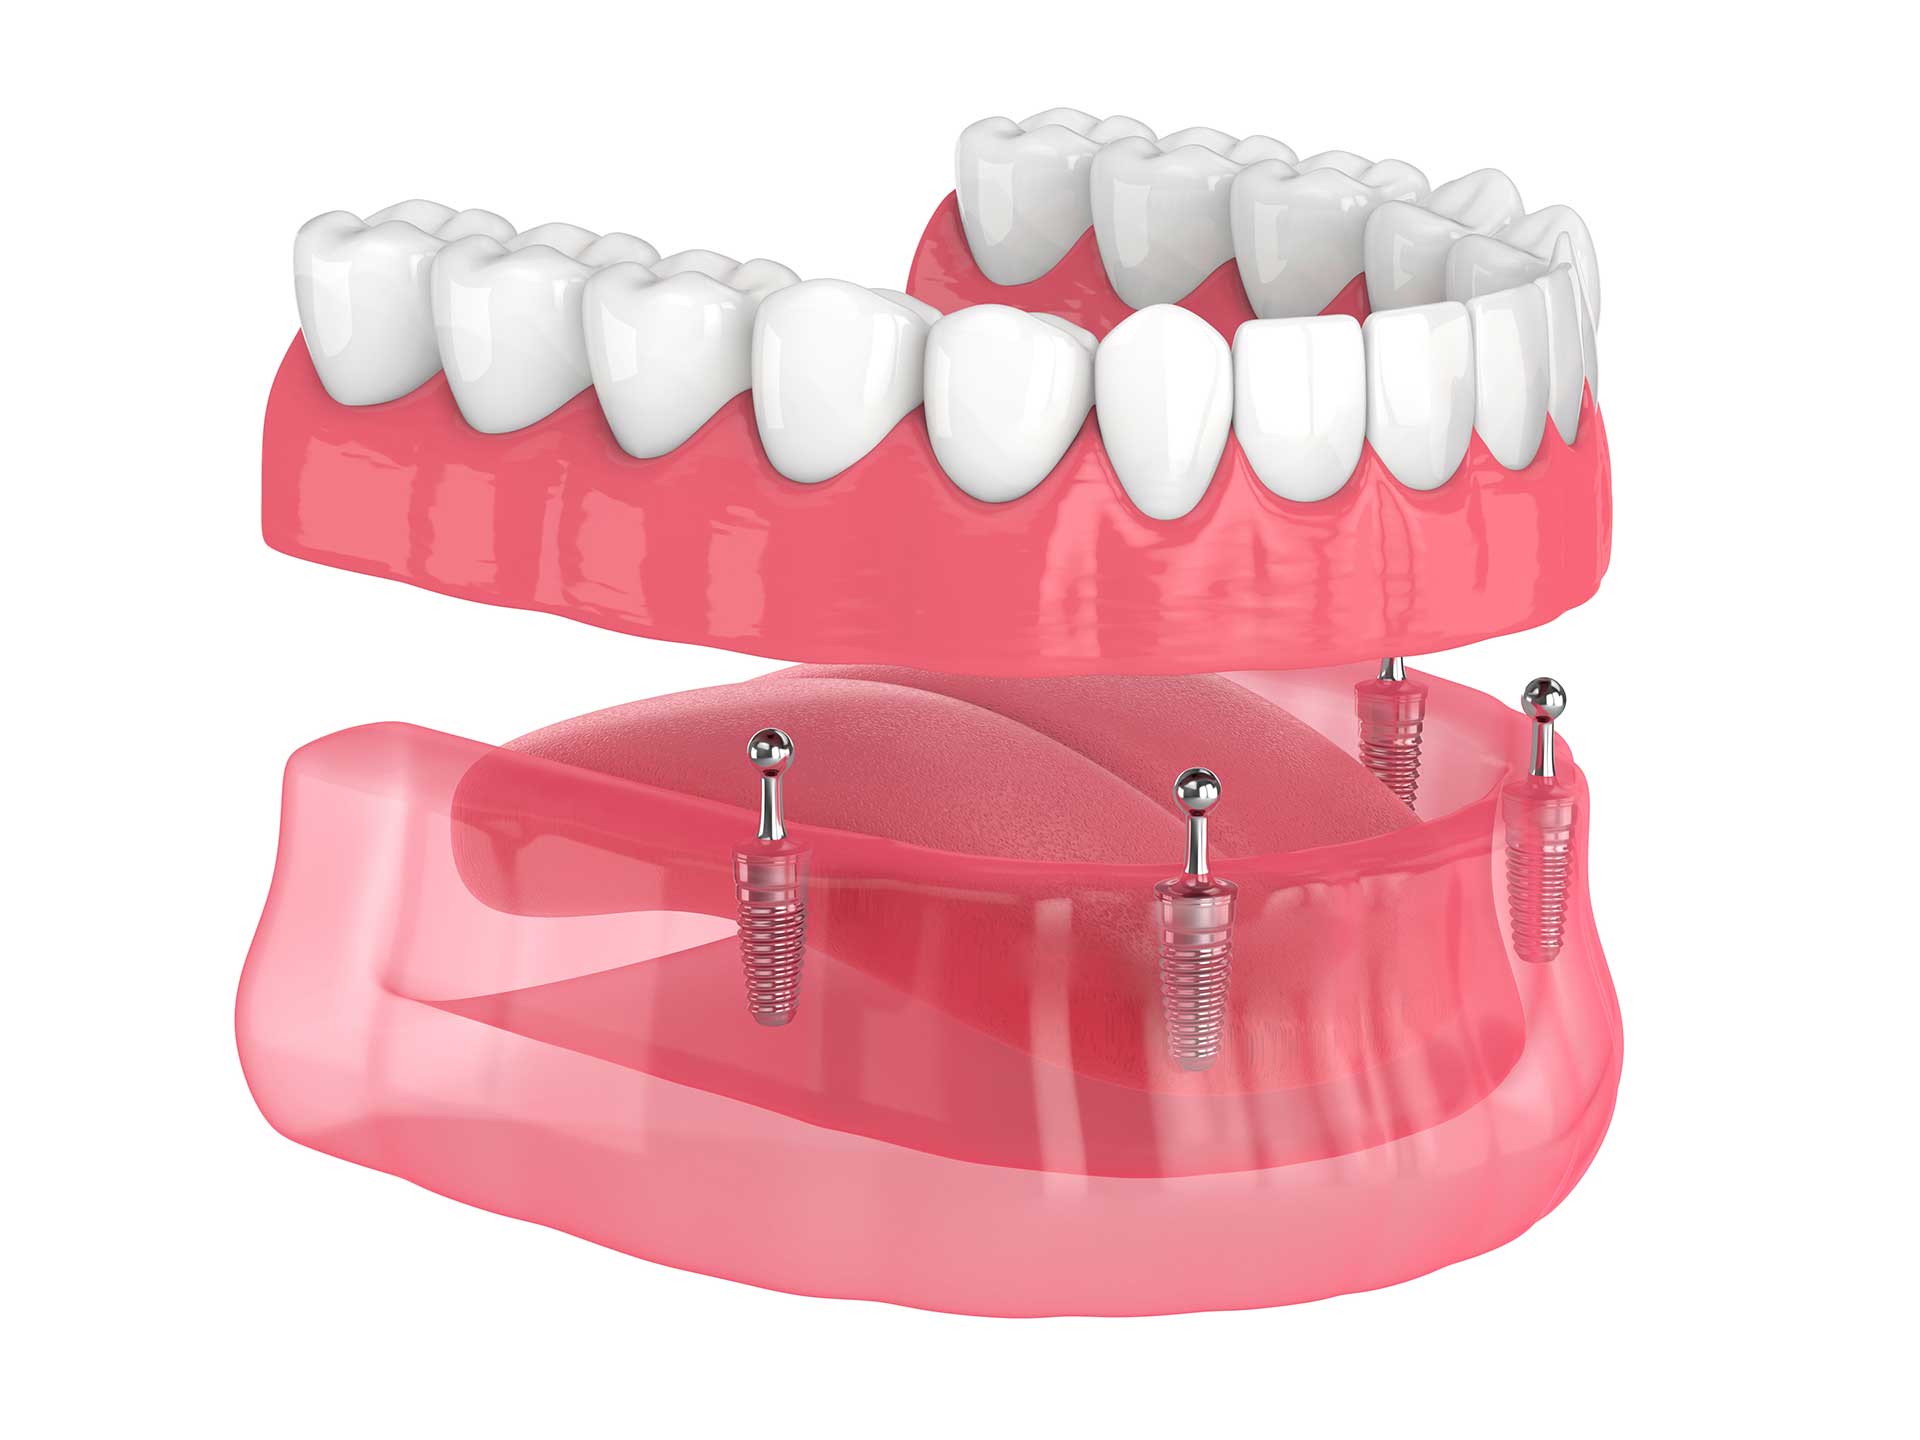 Dental And Denture Care Center, Spring Hill, FL, Implant Supported Hybrid Dentures